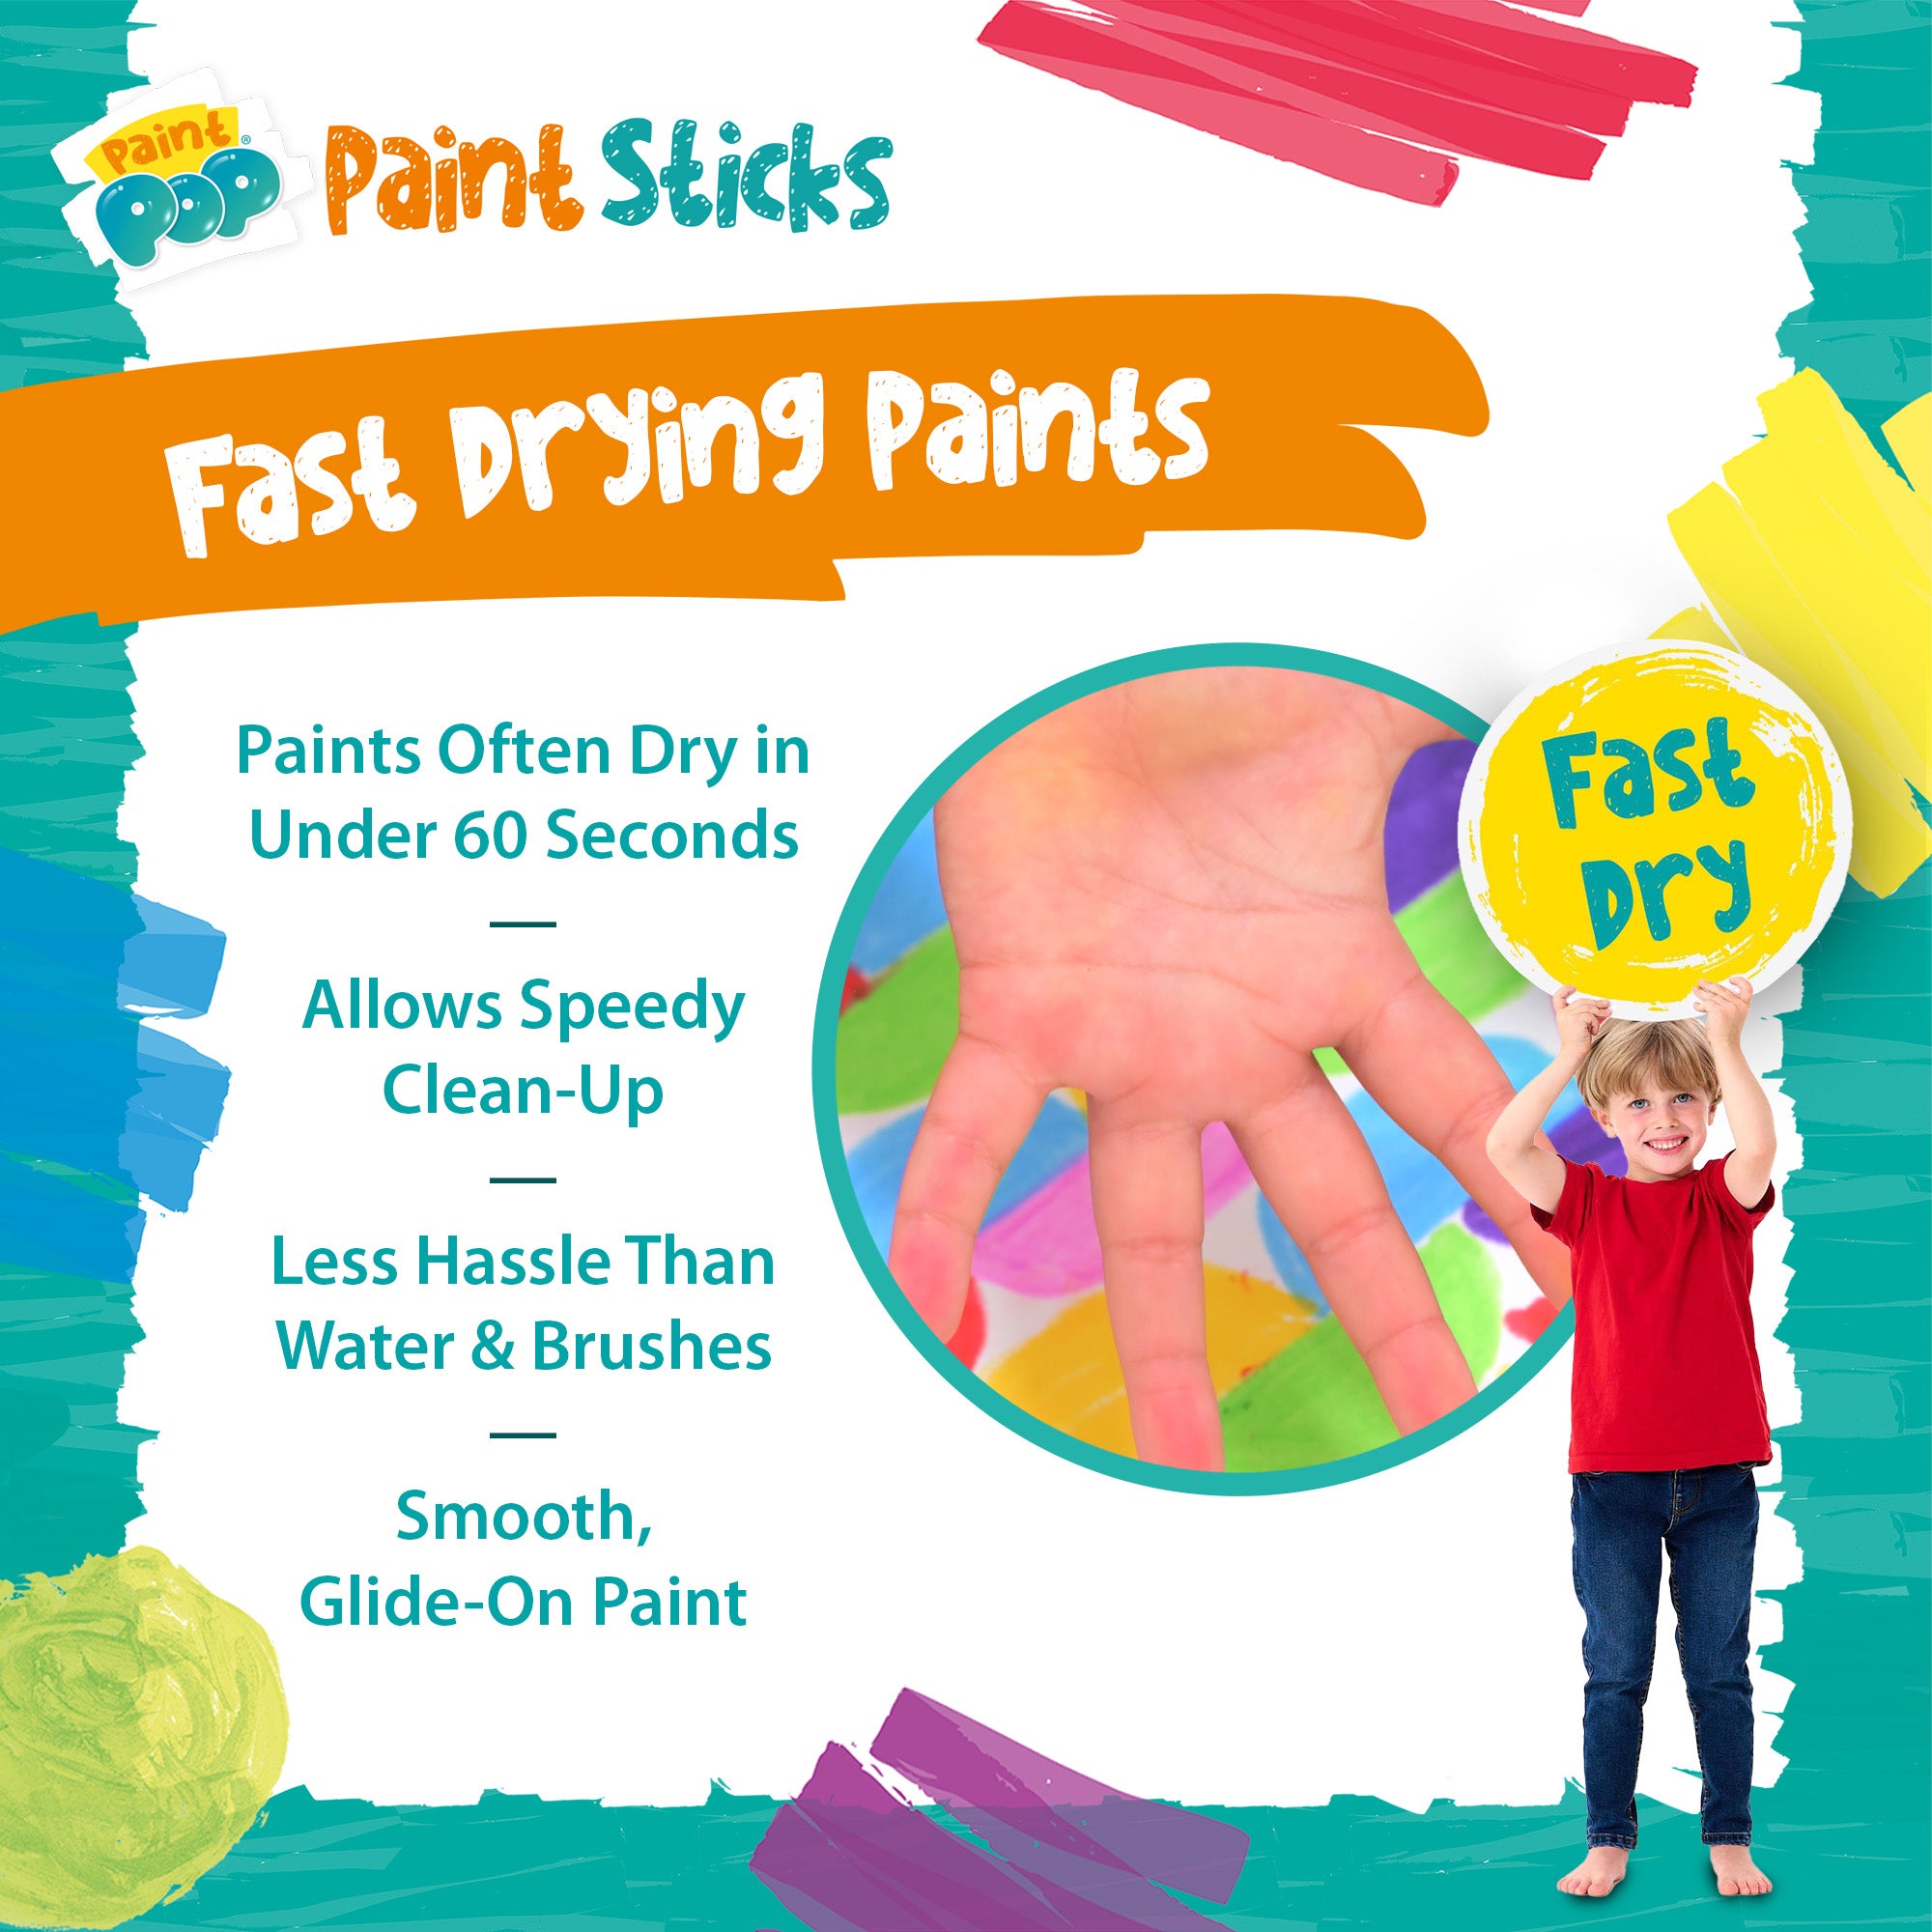 Paint Pop Classic 12 Pack Quick Dry Paint Sticks